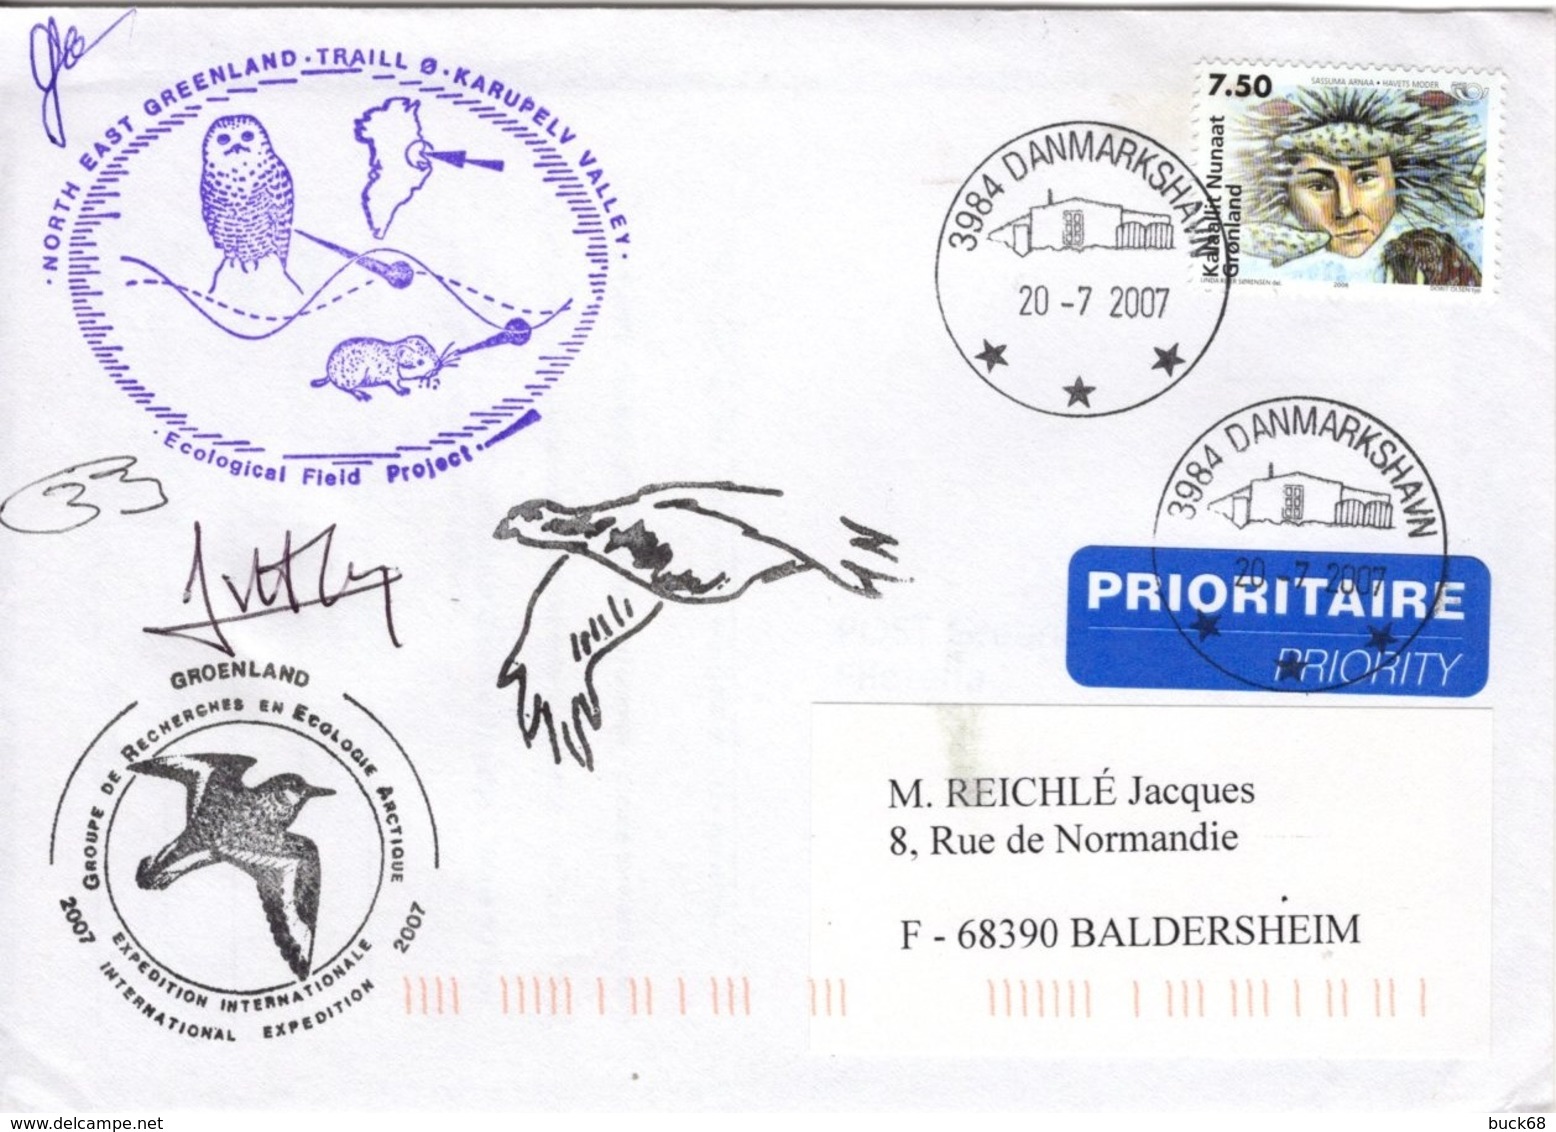 GROENLAND GRØNLAND 441 Lettre Signée GREA Ecological Field Expédition Karupelv Valley 2007 Hibou Owl Eule Polar Pôle - Postmarks